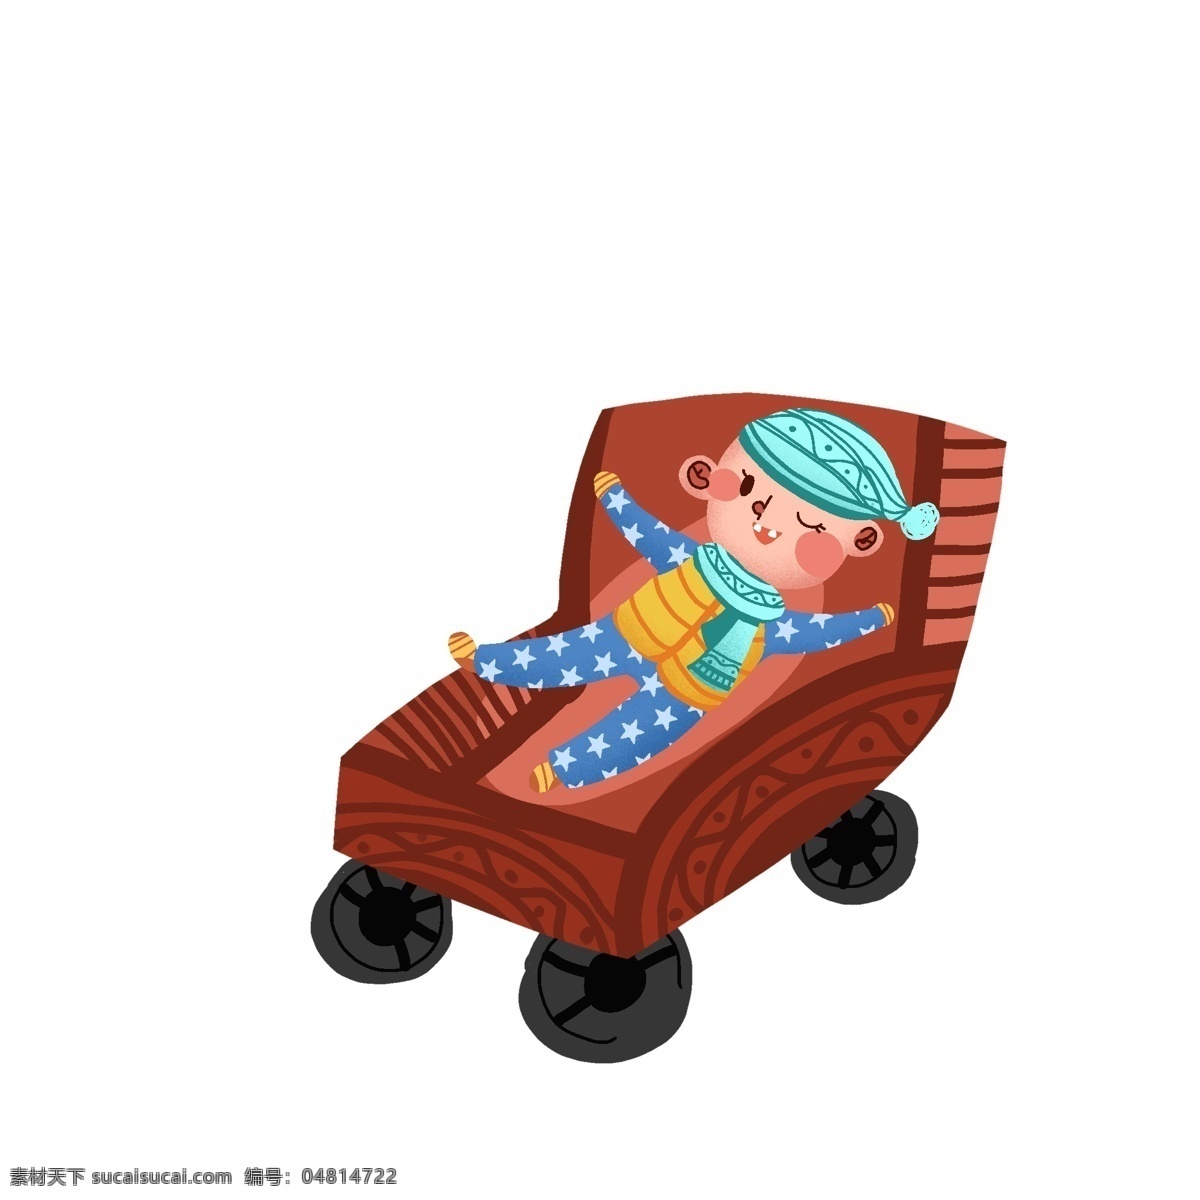 卡通 躺 椅子 上 小 婴儿 商用 元素 插画 小孩 psd素材 手绘